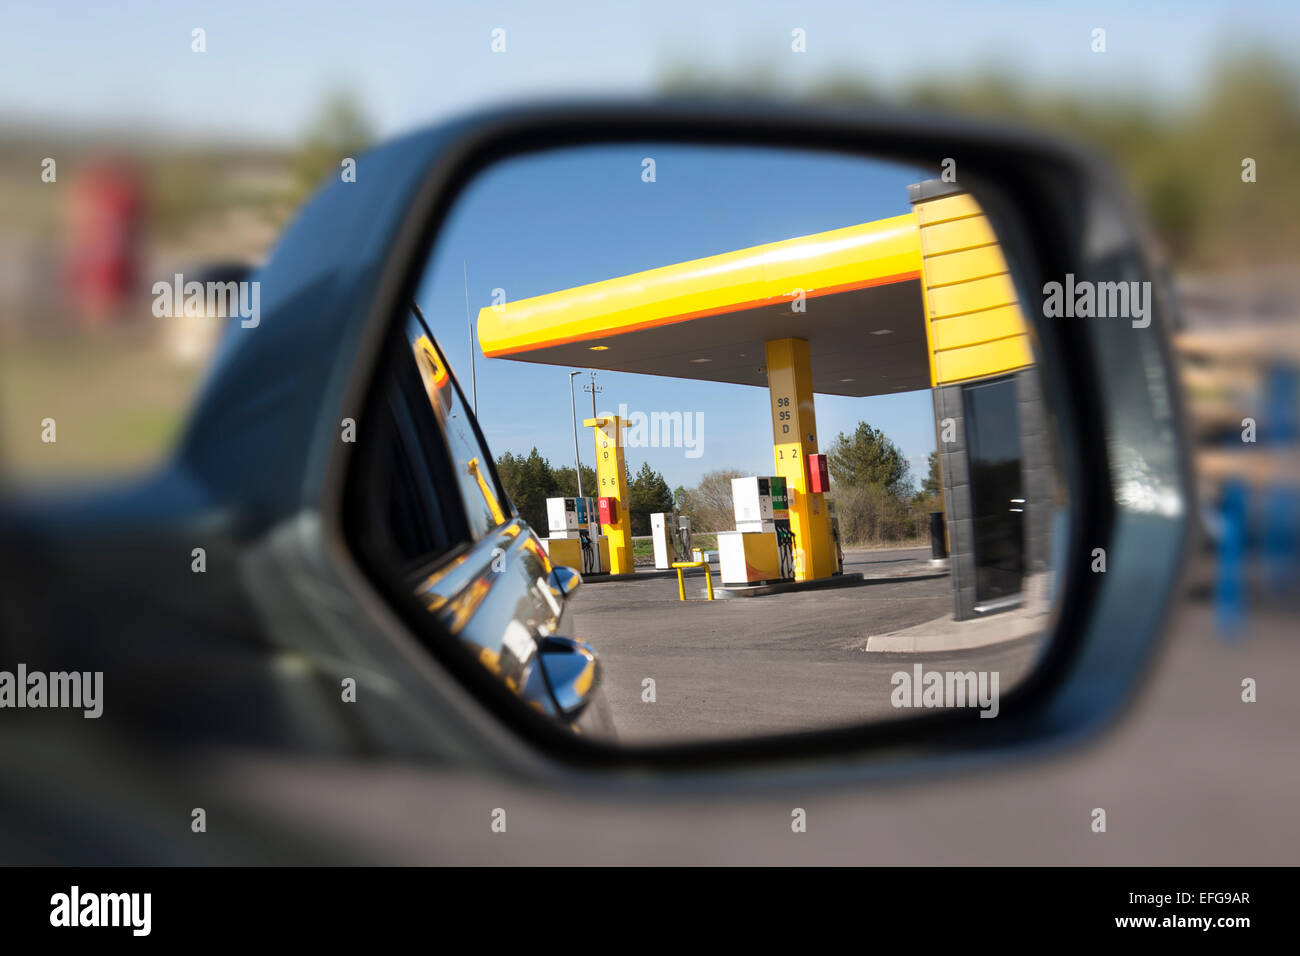 Reflexion der Tankstelle am Fahrzeug Außenspiegel. Selektiven Fokus. Tankstelle mit Dispenser und Pumpen. Stockfoto